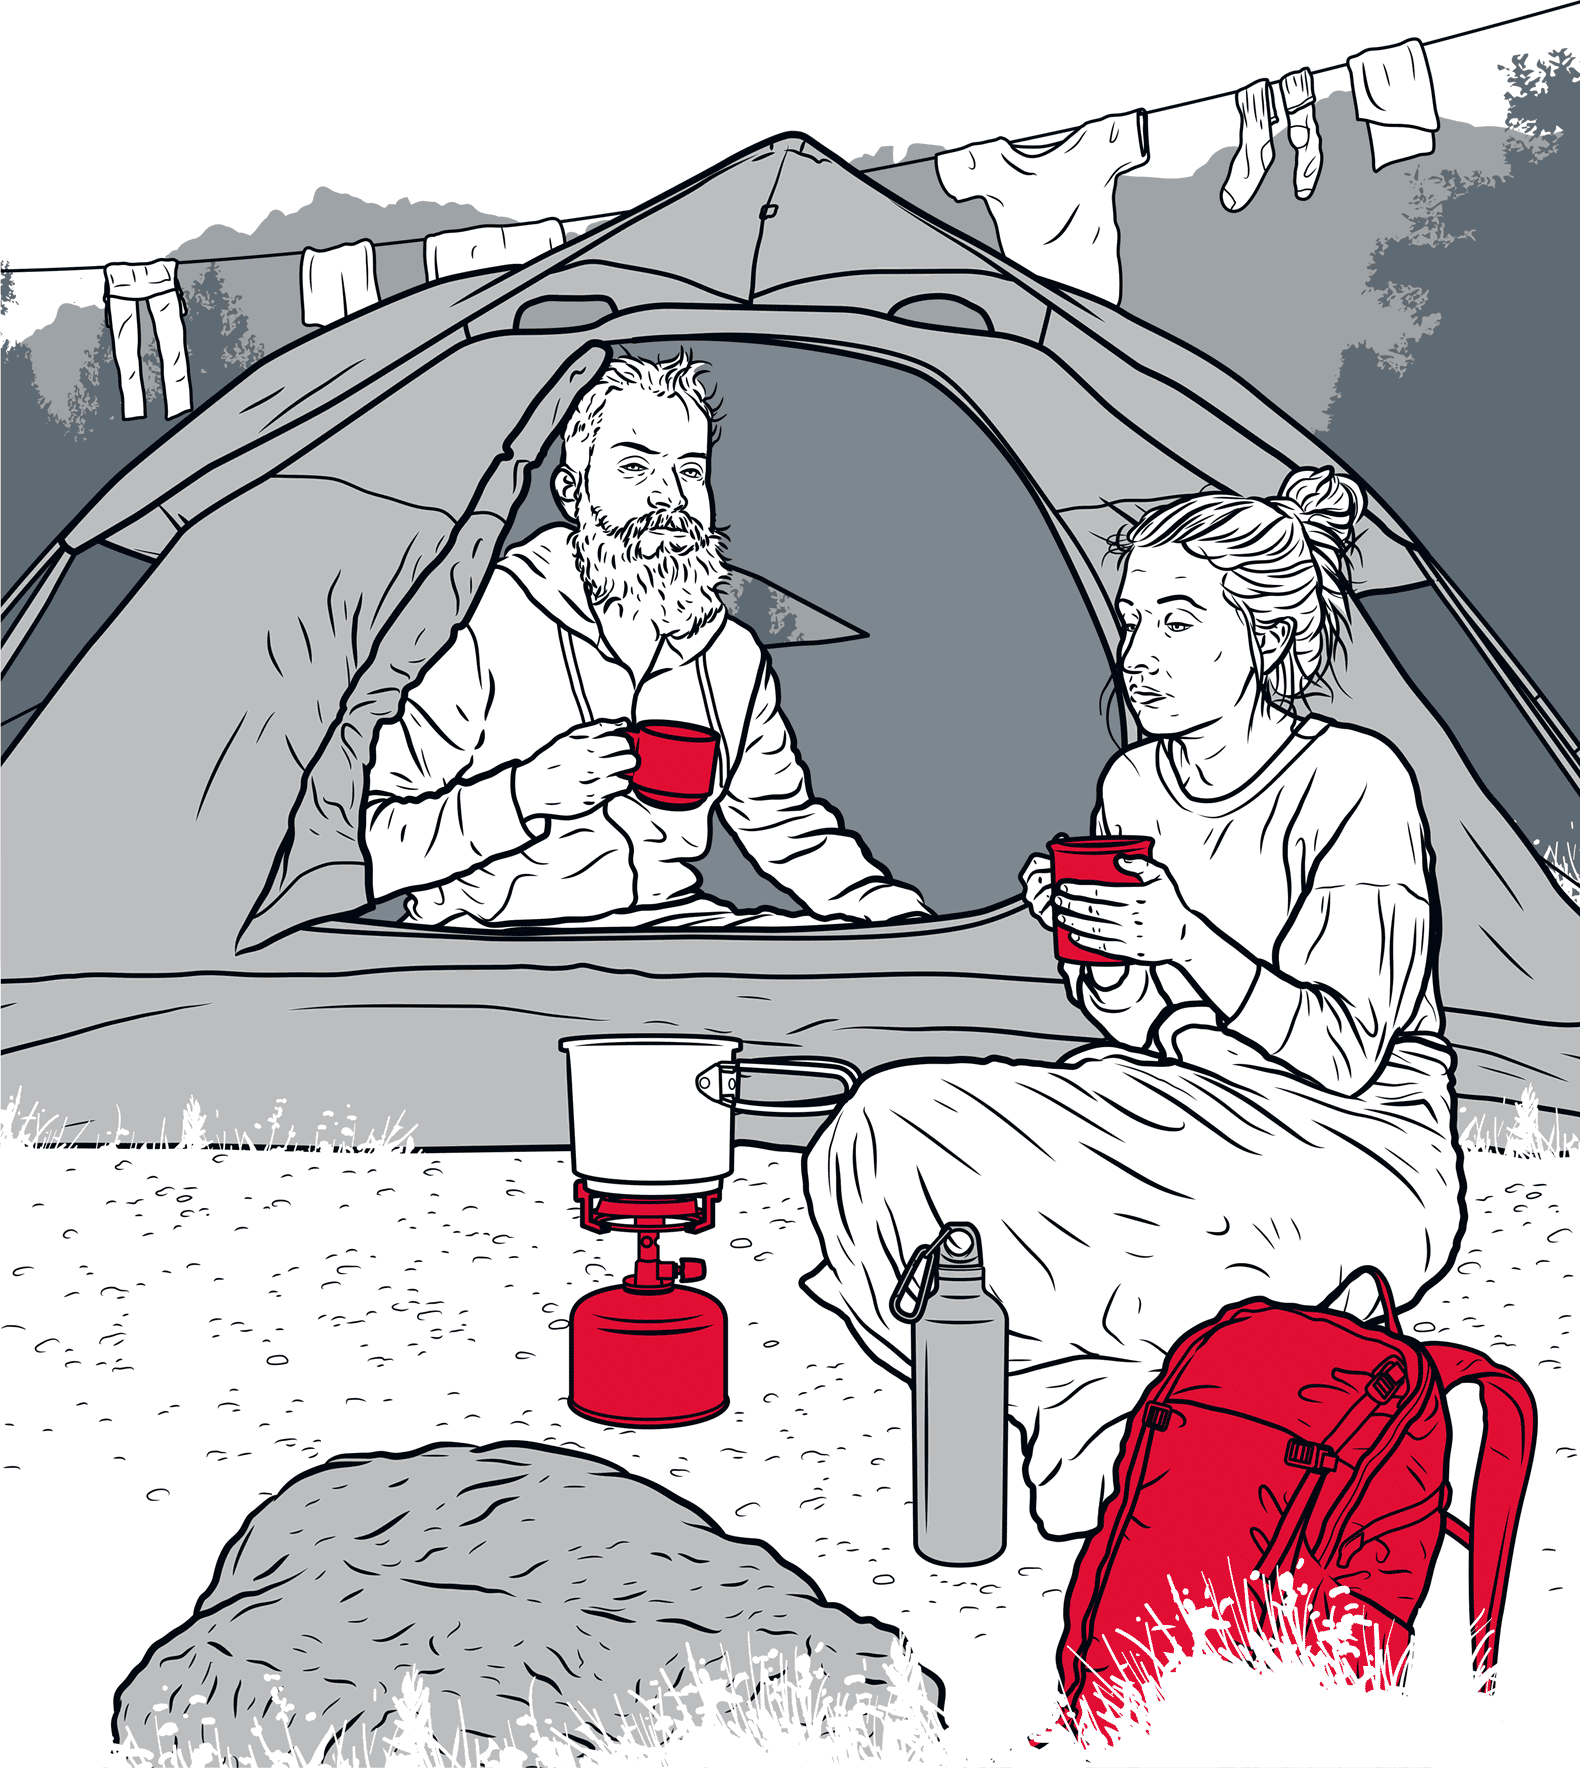 Illustrasjon av to mennesker på fjelltur, den ene sitter inne i teltet, den andre sitter utenfor med et pledd. 